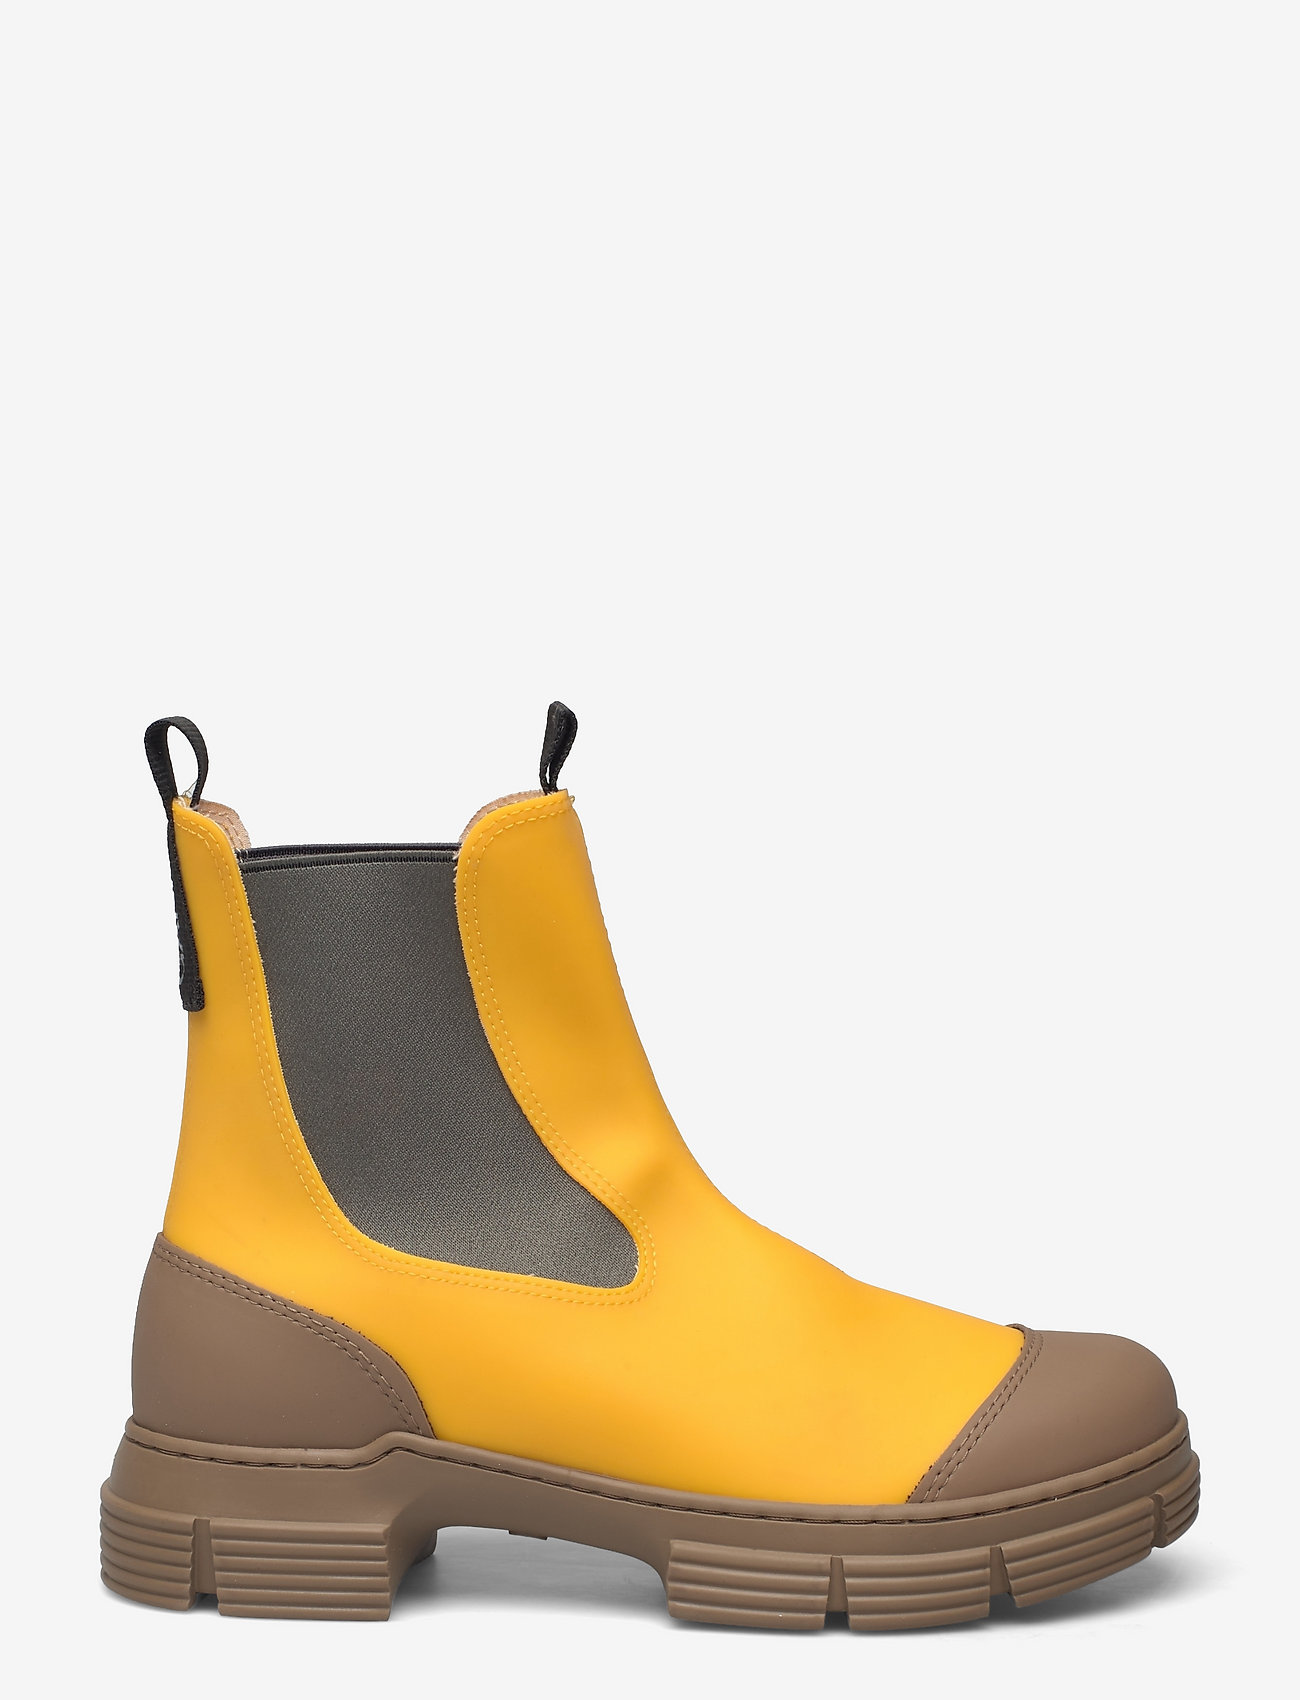 Ganni - City Boot - støvler - spectra yellow - 1